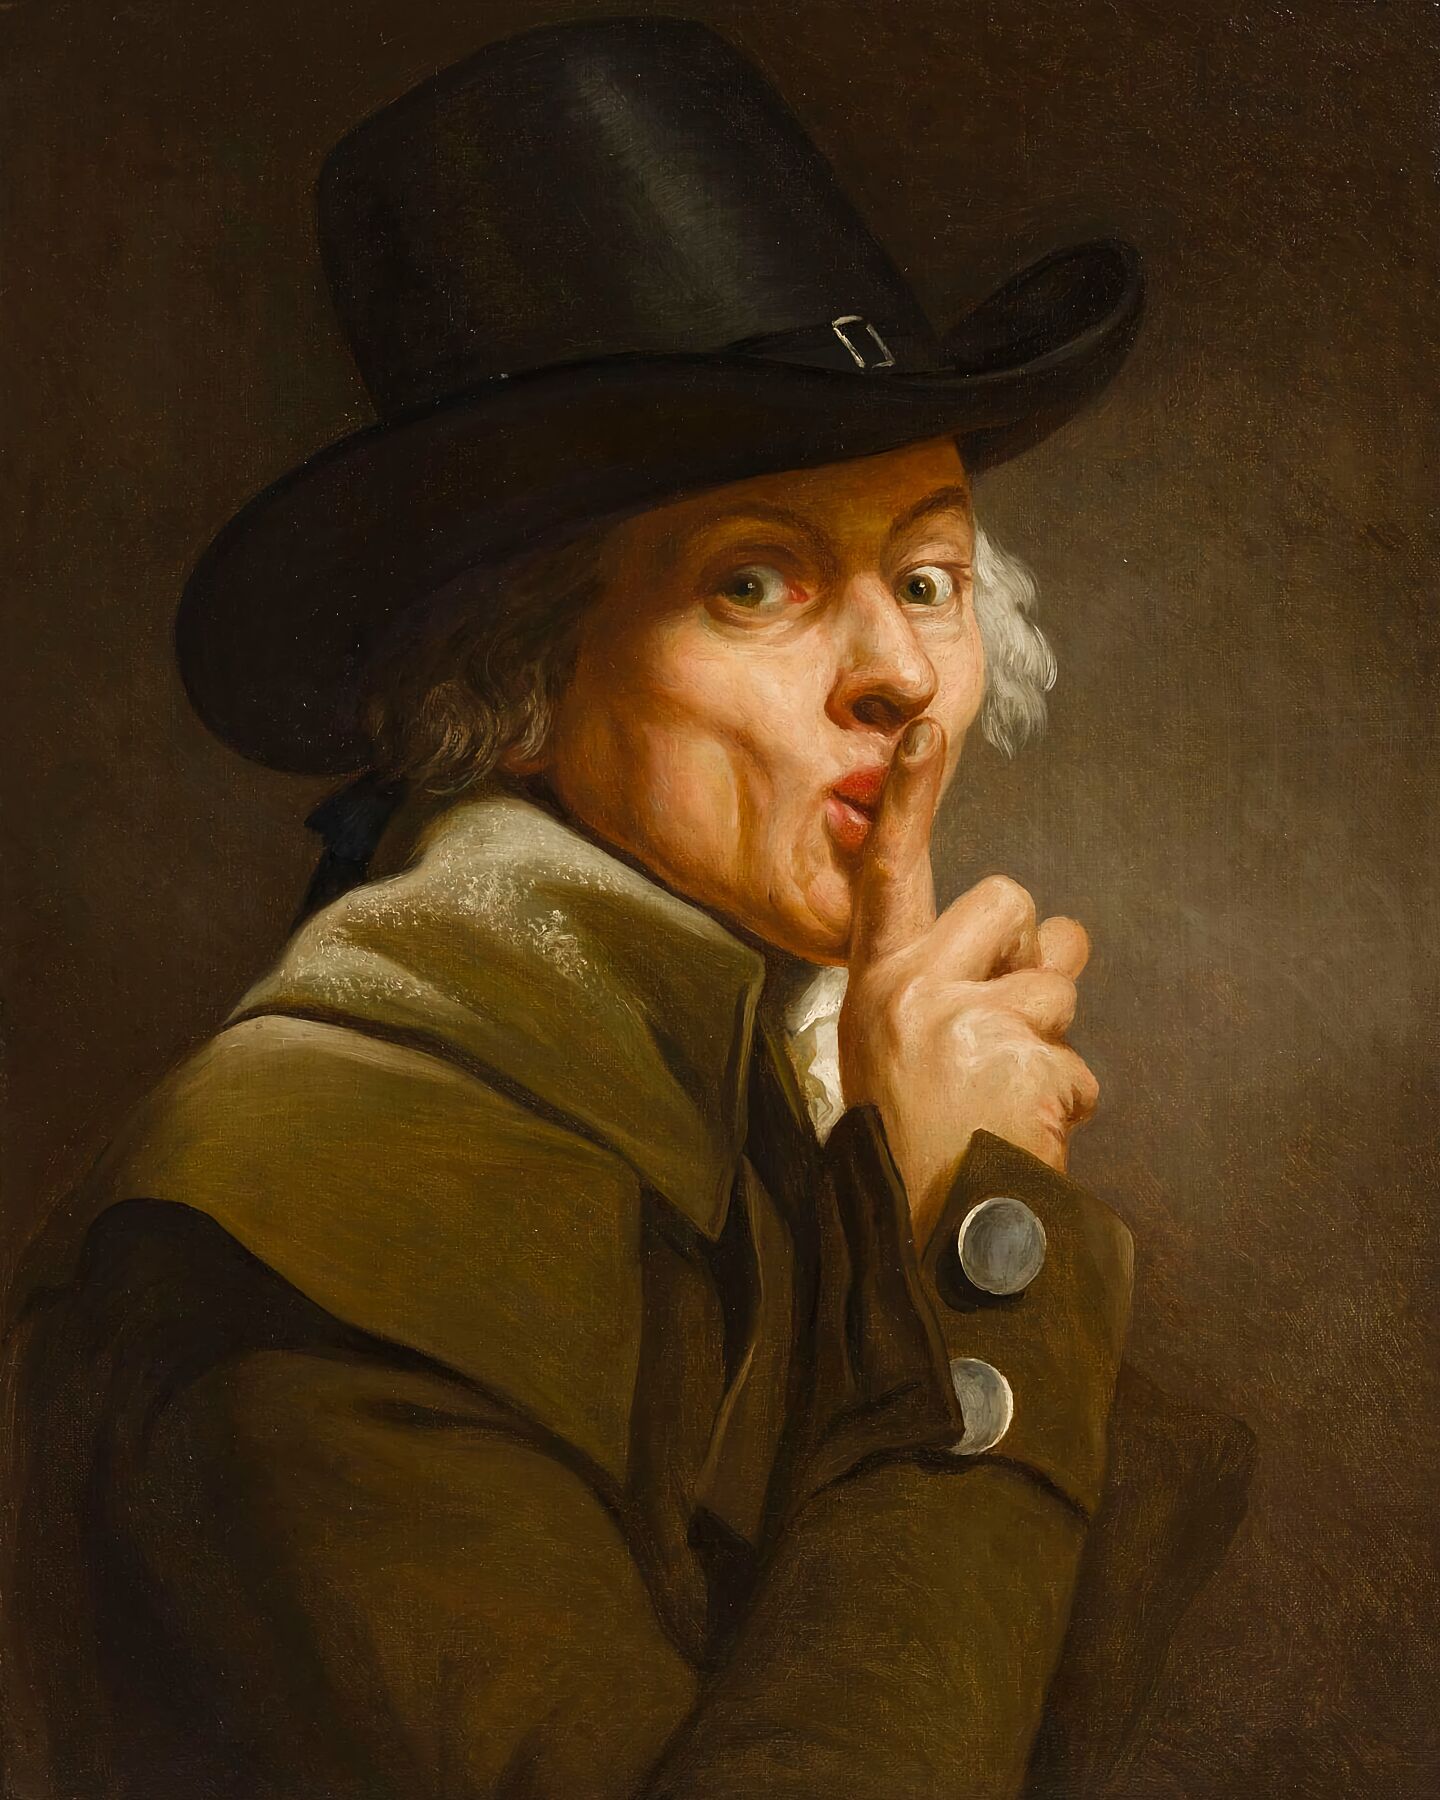 Self-Portrait, Silence by Joseph Ducreux - c. 1790